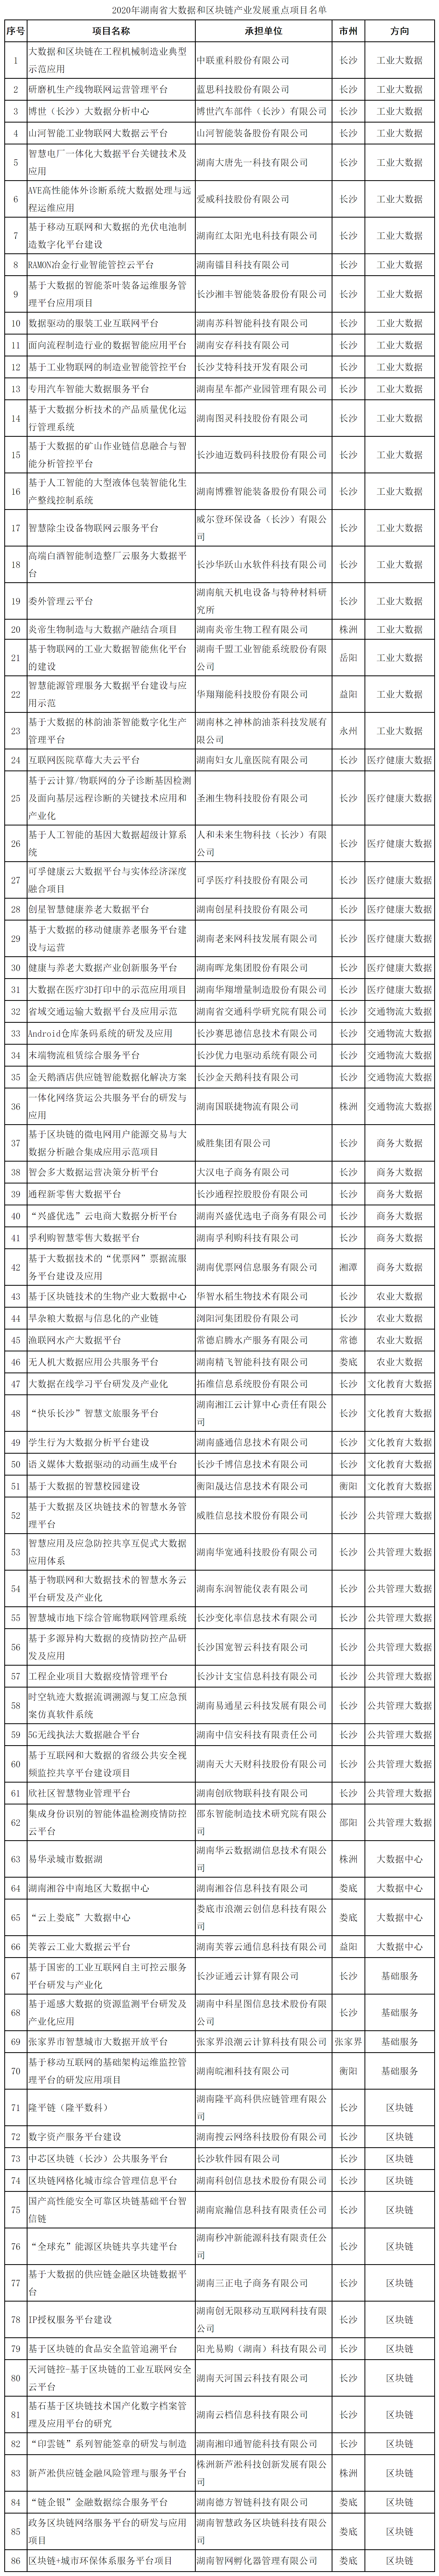 湖南省公布16个区块链产业发展重点项目